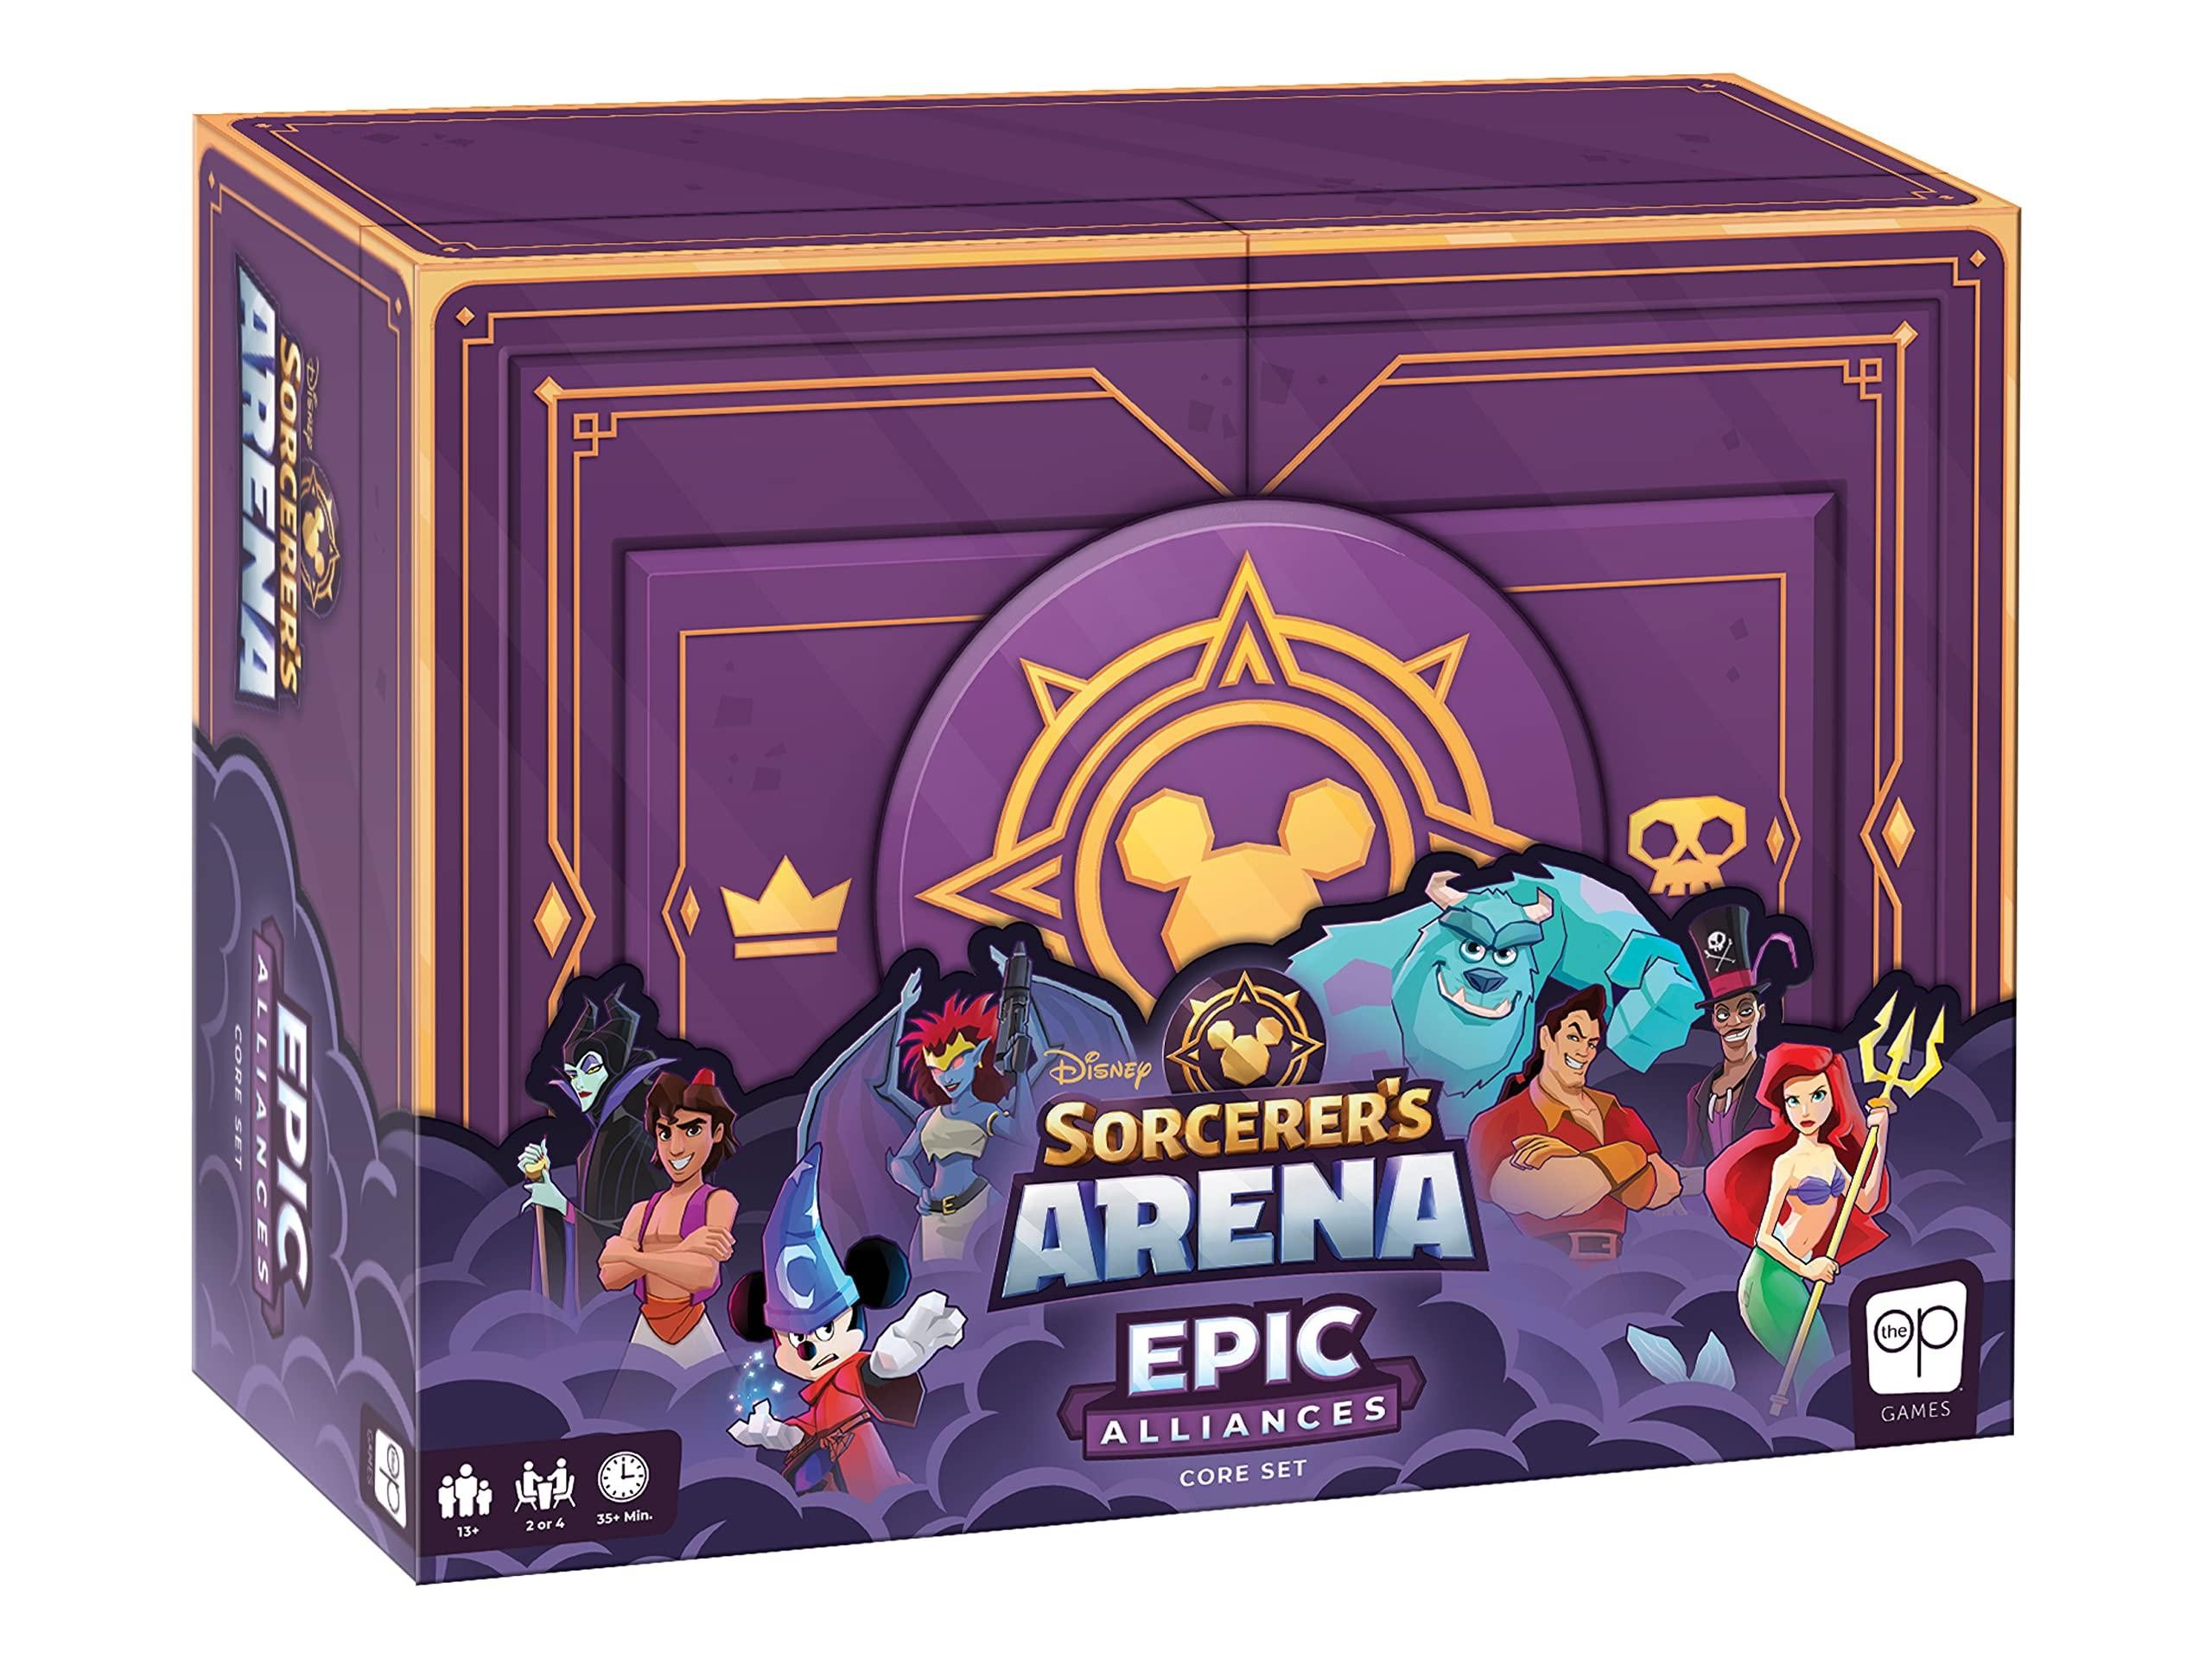 Sorcerer's Arena Epic Alliances